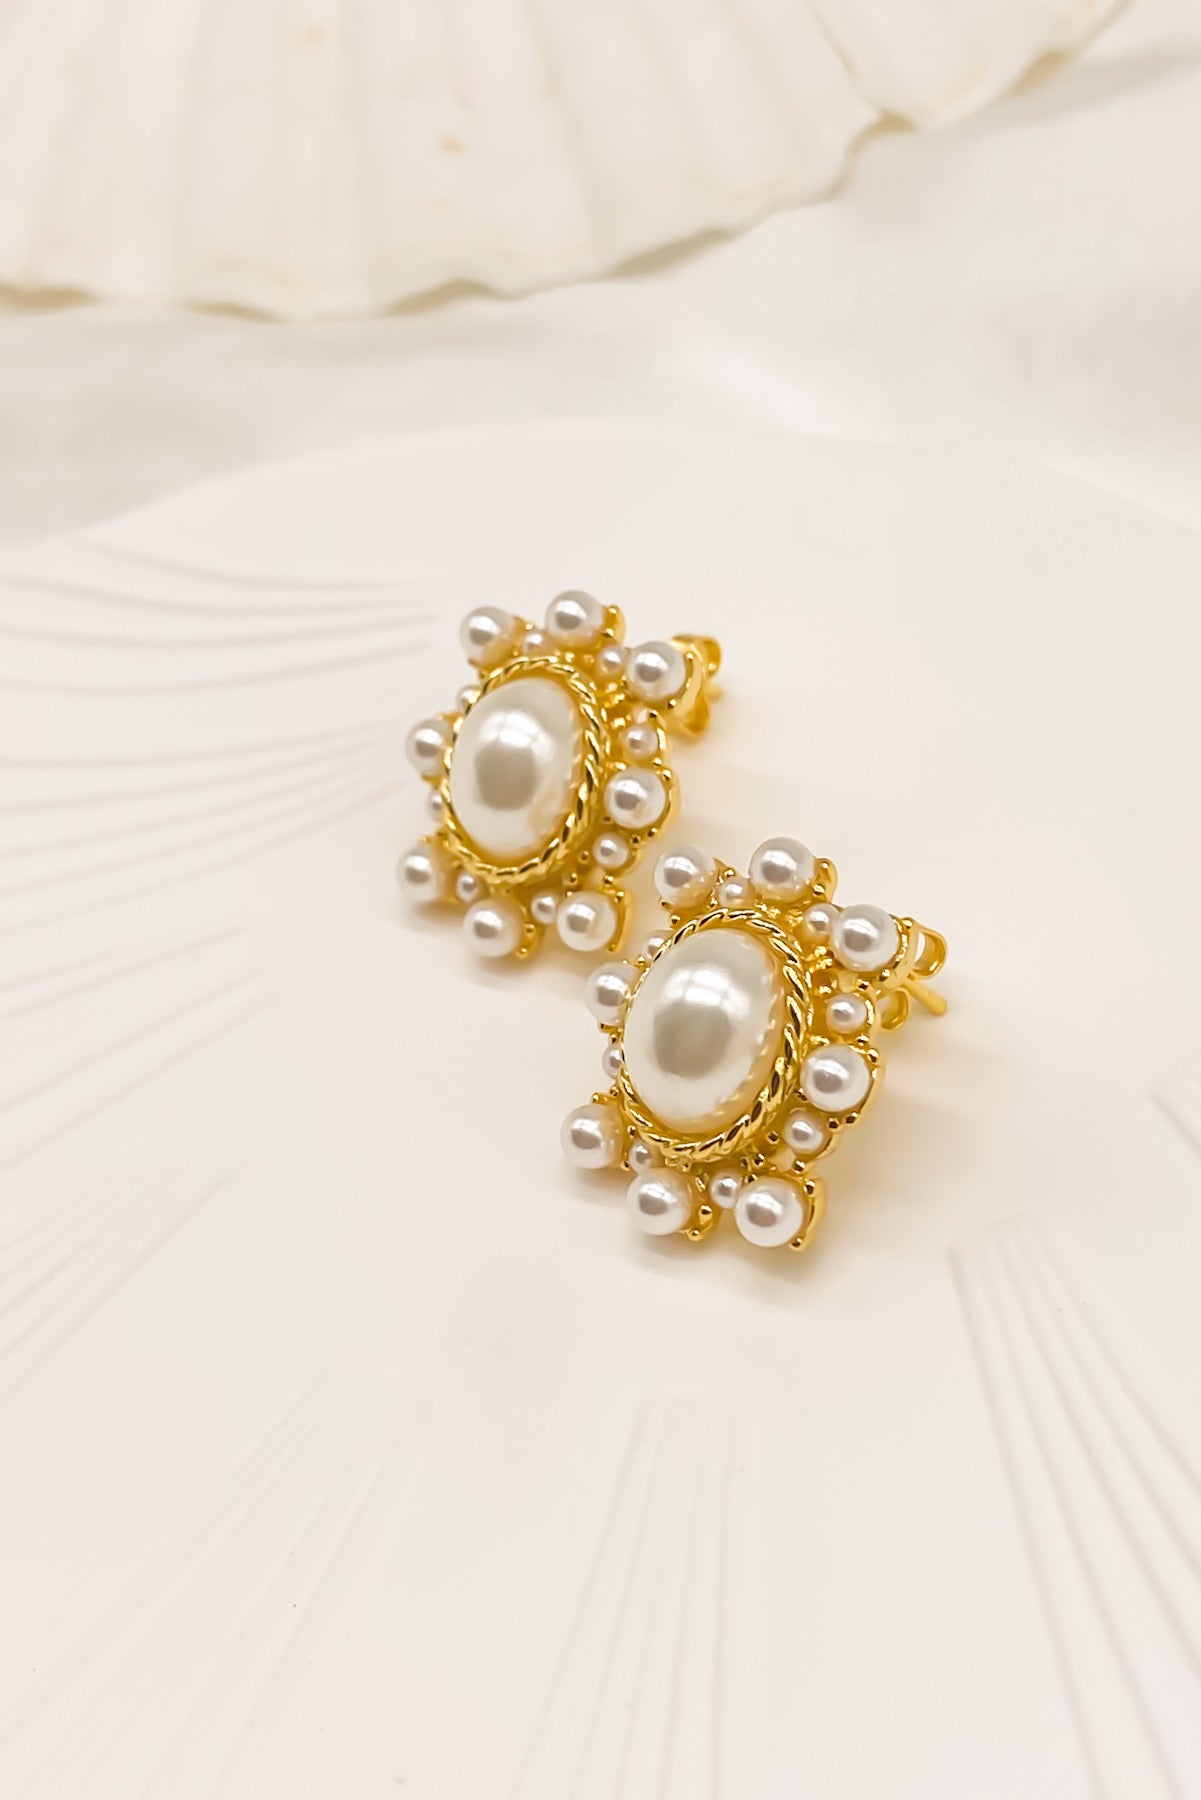 SKYE Shop Chic Modern Elegant Classy Women Jewelry French Parisian Minimalist Haley Pearl Earrings 6